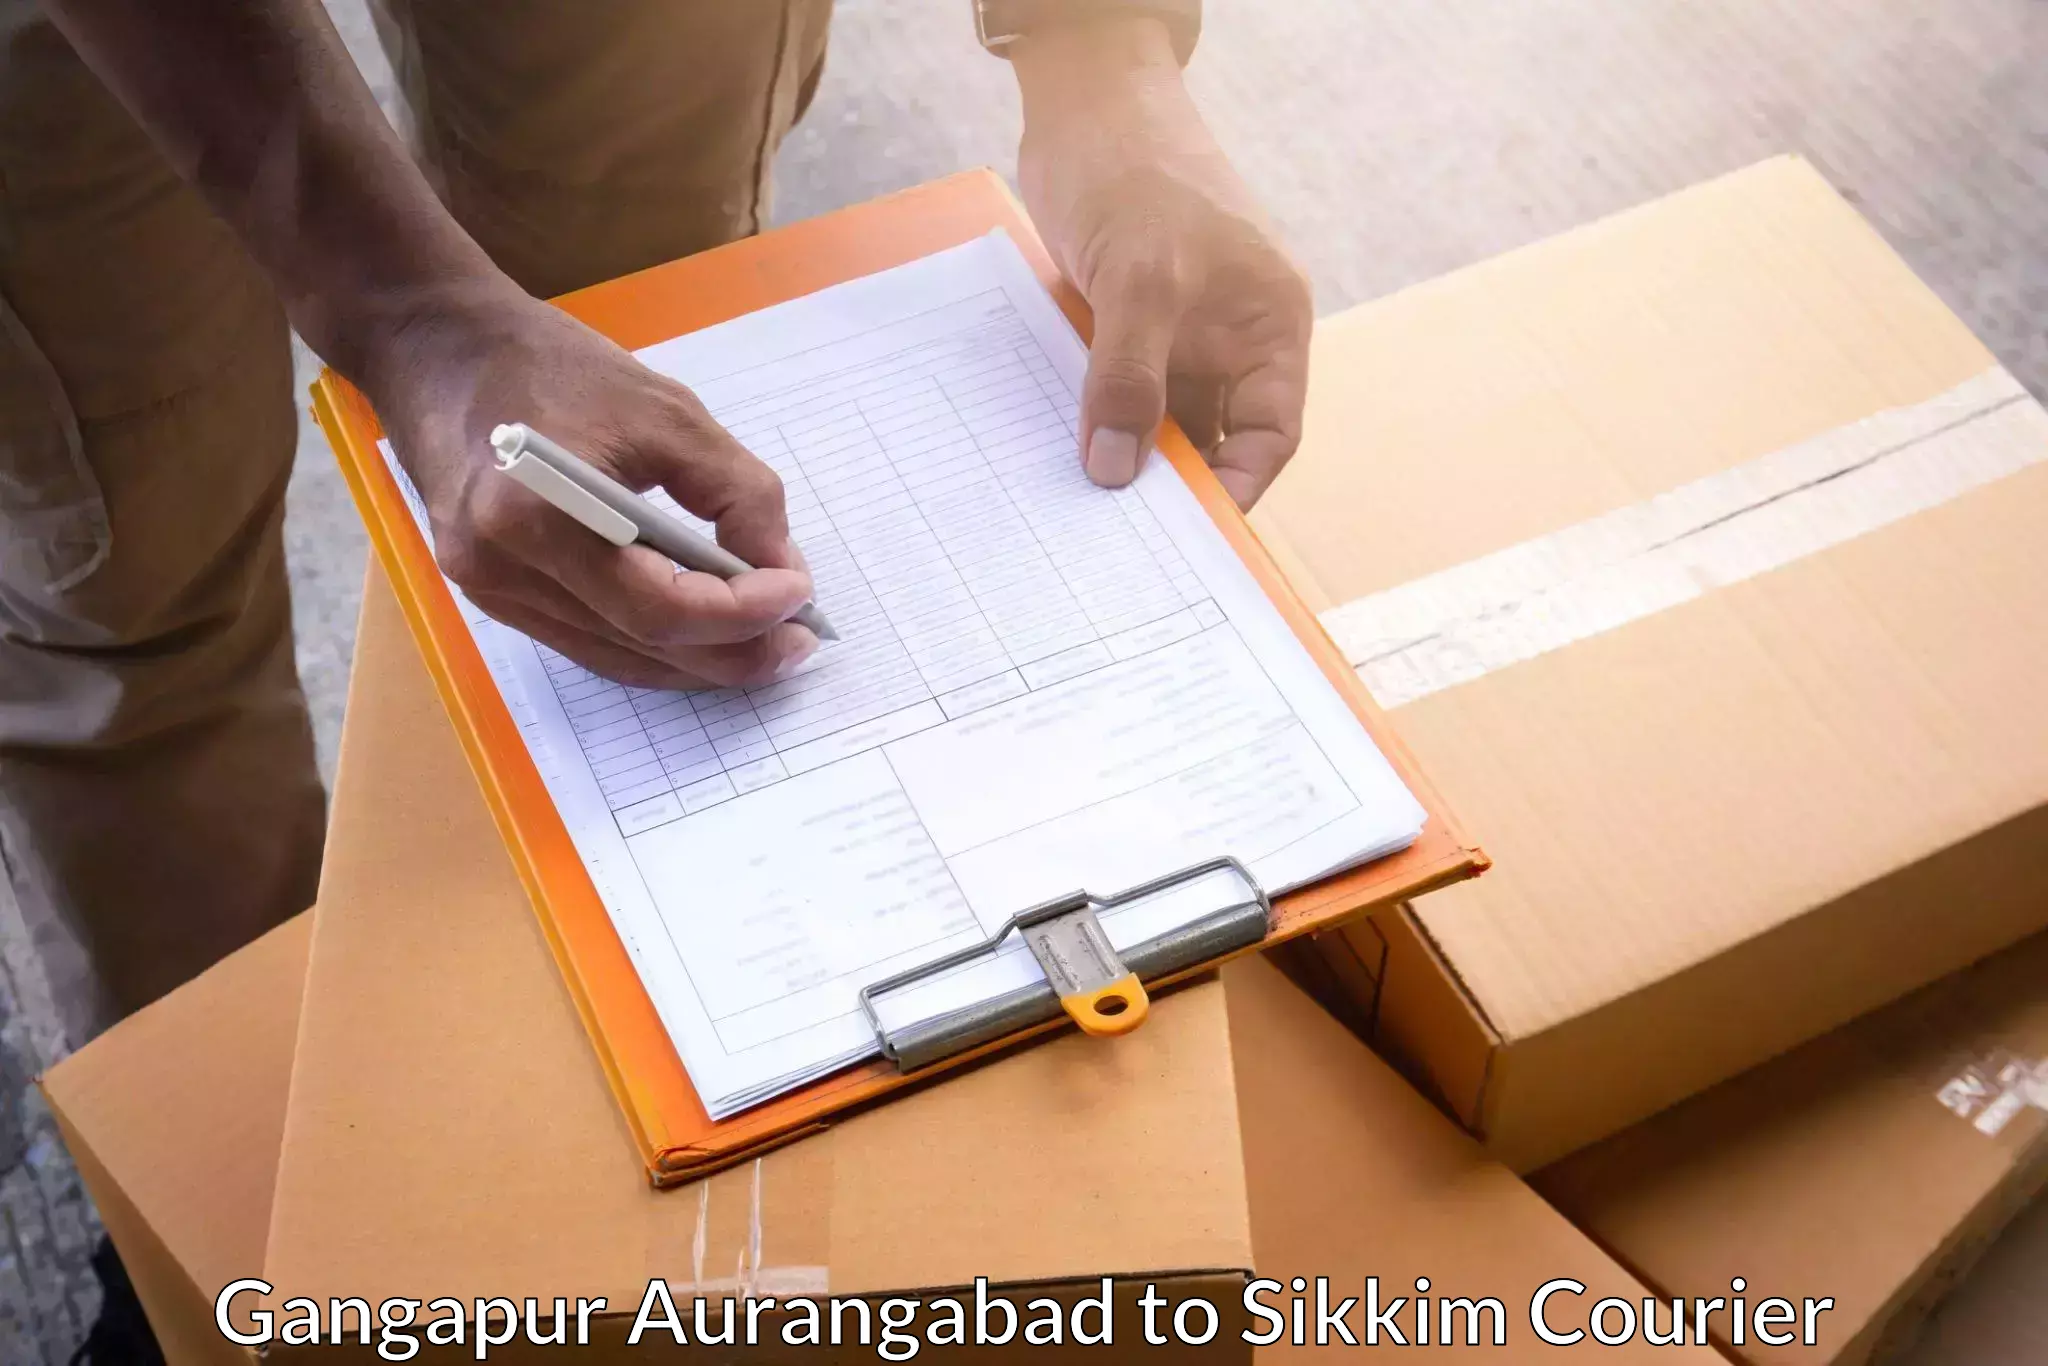 Global logistics network Gangapur Aurangabad to Pelling